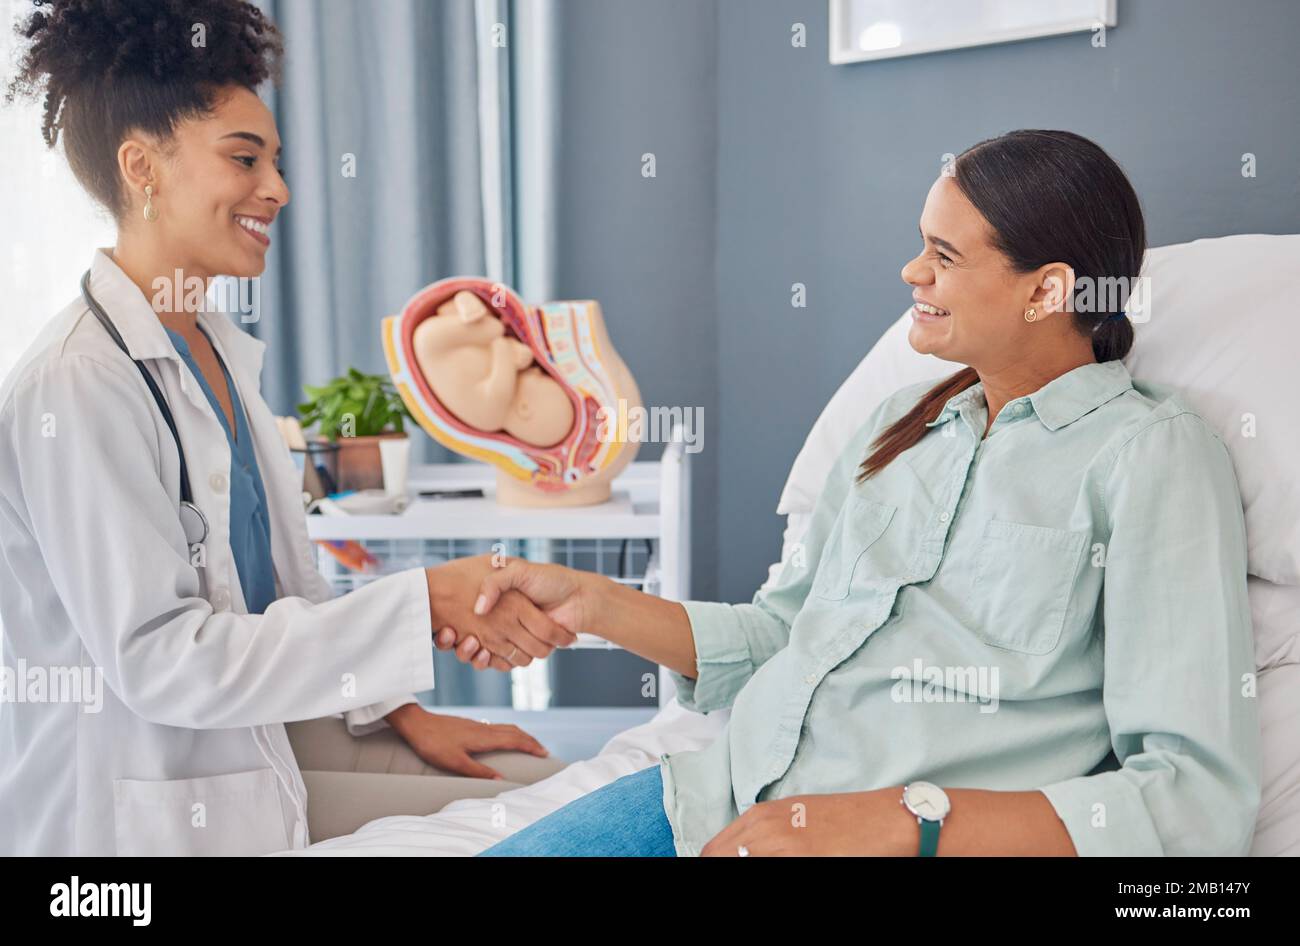 Schwangere Patientin, Arzt oder Gynäkologe, die sich die Hände schüttelt, um sie willkommen zu heißen, danke und hallo Schwangerschaft, Mutterschaftsberatung, Gynäkologie oder Frau Stockfoto